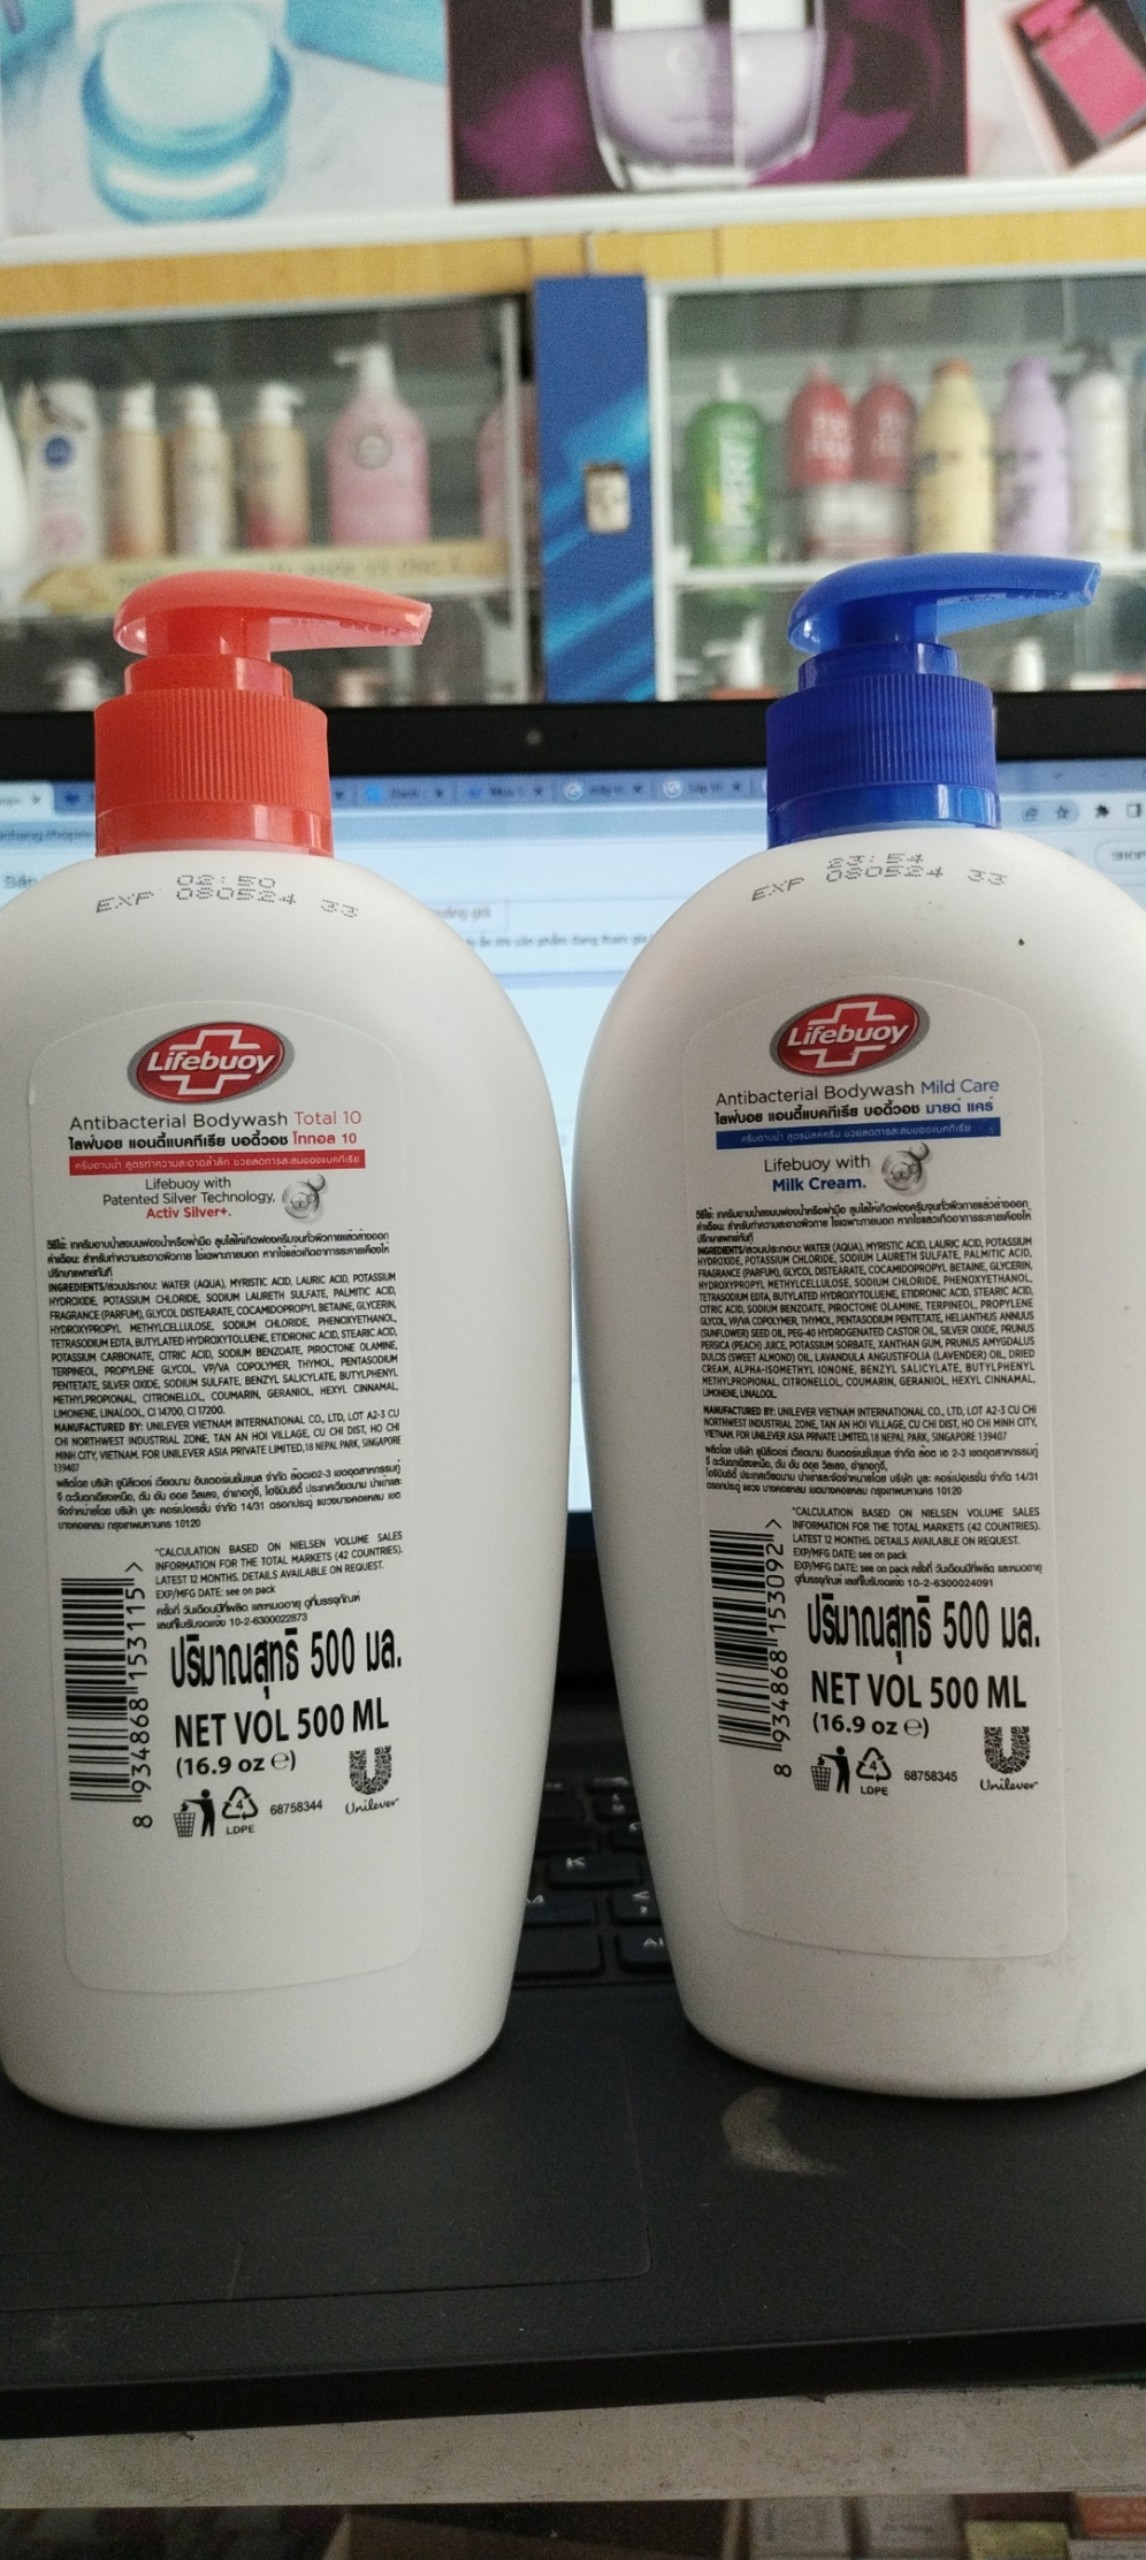 Sữa tắm bảo vệ khỏi vi khuẩn Life-buoy antibacterial 500ml-thái  ( không có tem phụ-không xuất hóa đơn đỏ )